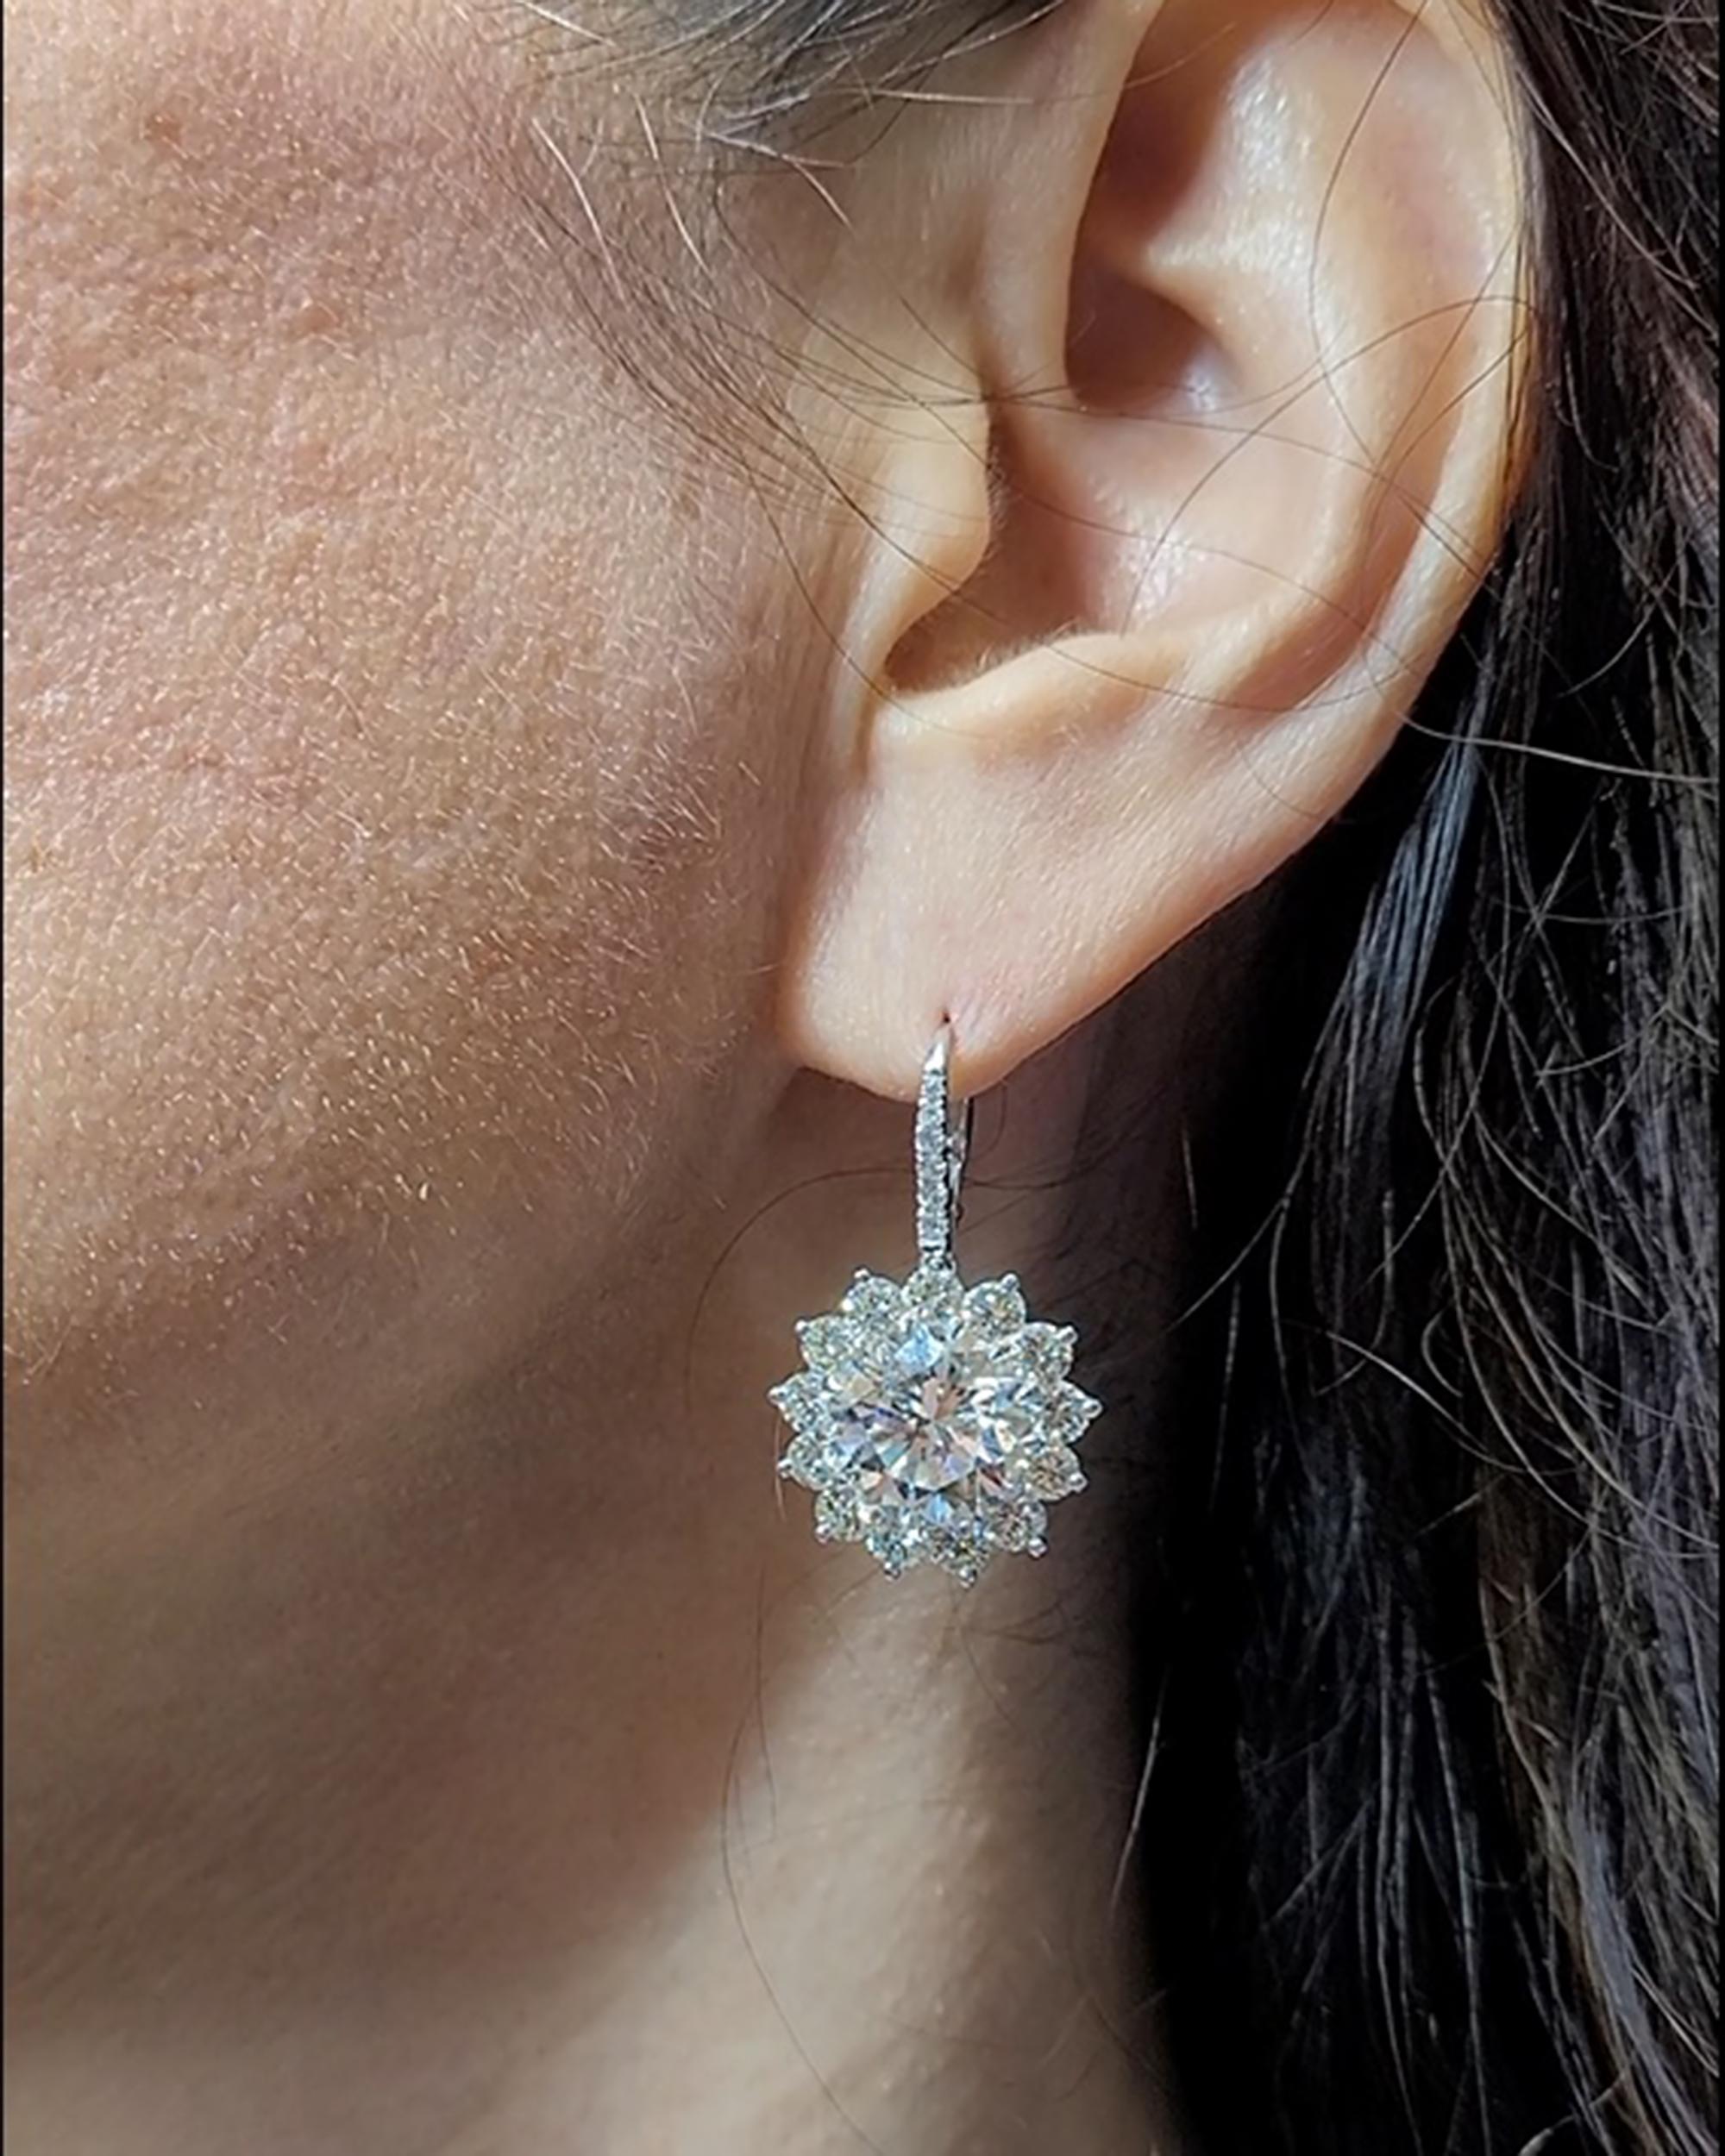 Une paire de boucles d'oreilles importantes conçues comme une fleur et montées en platine.
Comprenant deux diamants ronds au centre, certifiés par le GIA indiquant qu'ils sont de 5,76 carats J VS2 et de 5,88 carats I VVS1.
26 diamants ronds autour